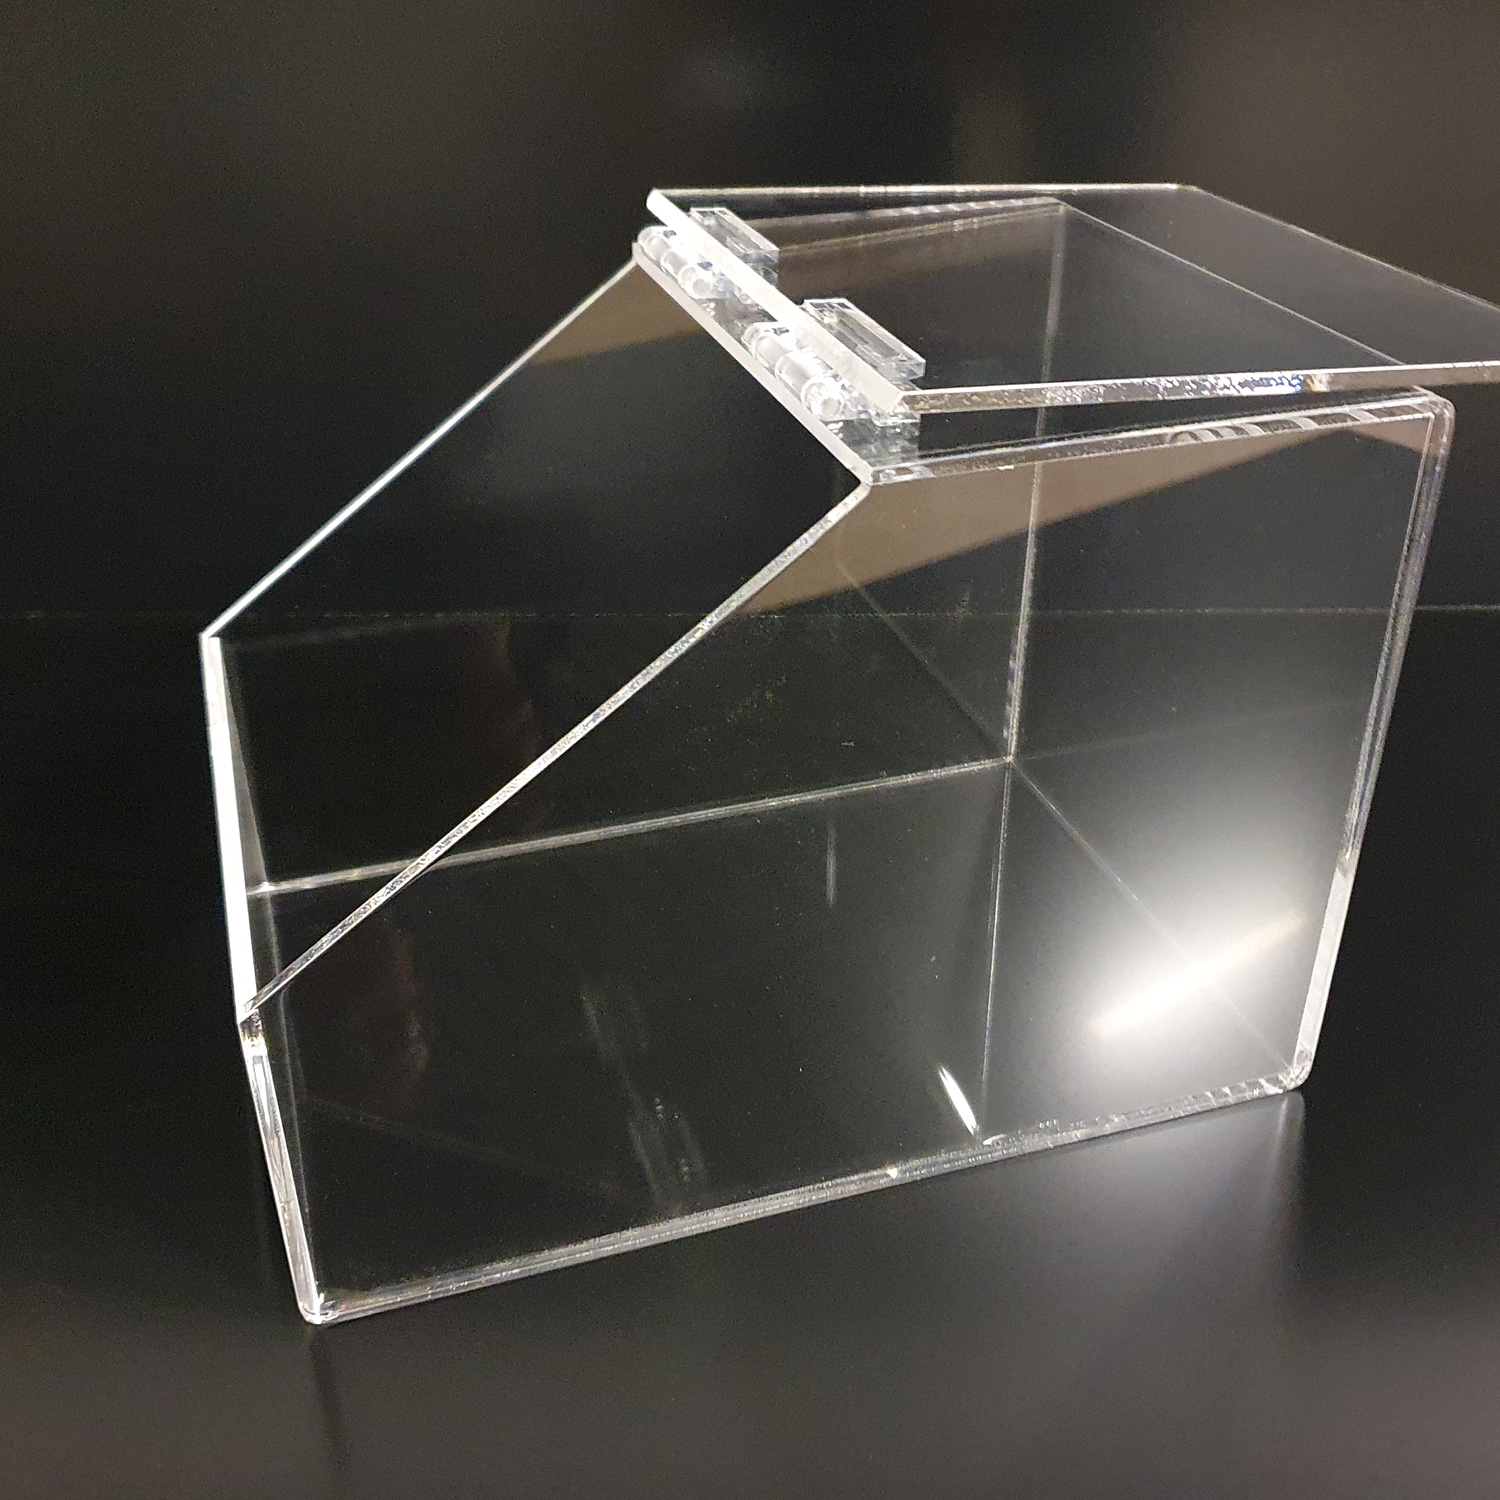 Boite à vrac en plexiglas avec couvercle incolore épaisseur 4 mm avec charnières en plexiglas incolore par Atelier du plastique à Verson